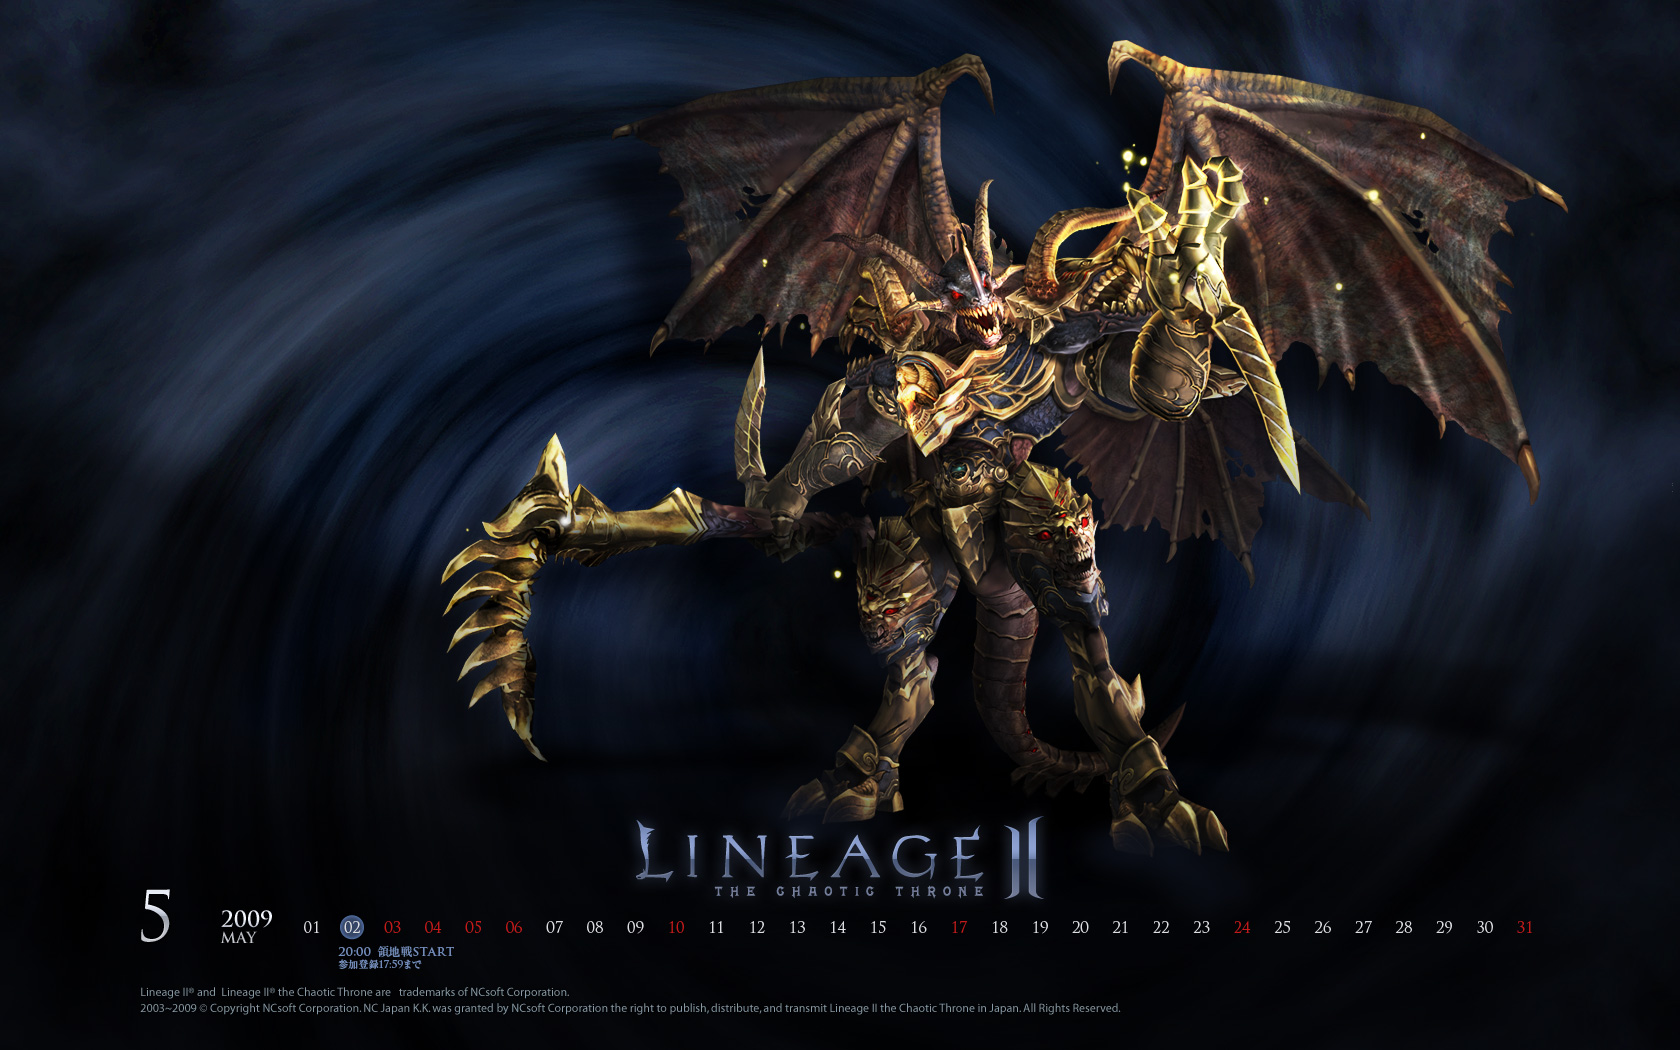 Lineage II - gra fantasy MMORPG za darmo